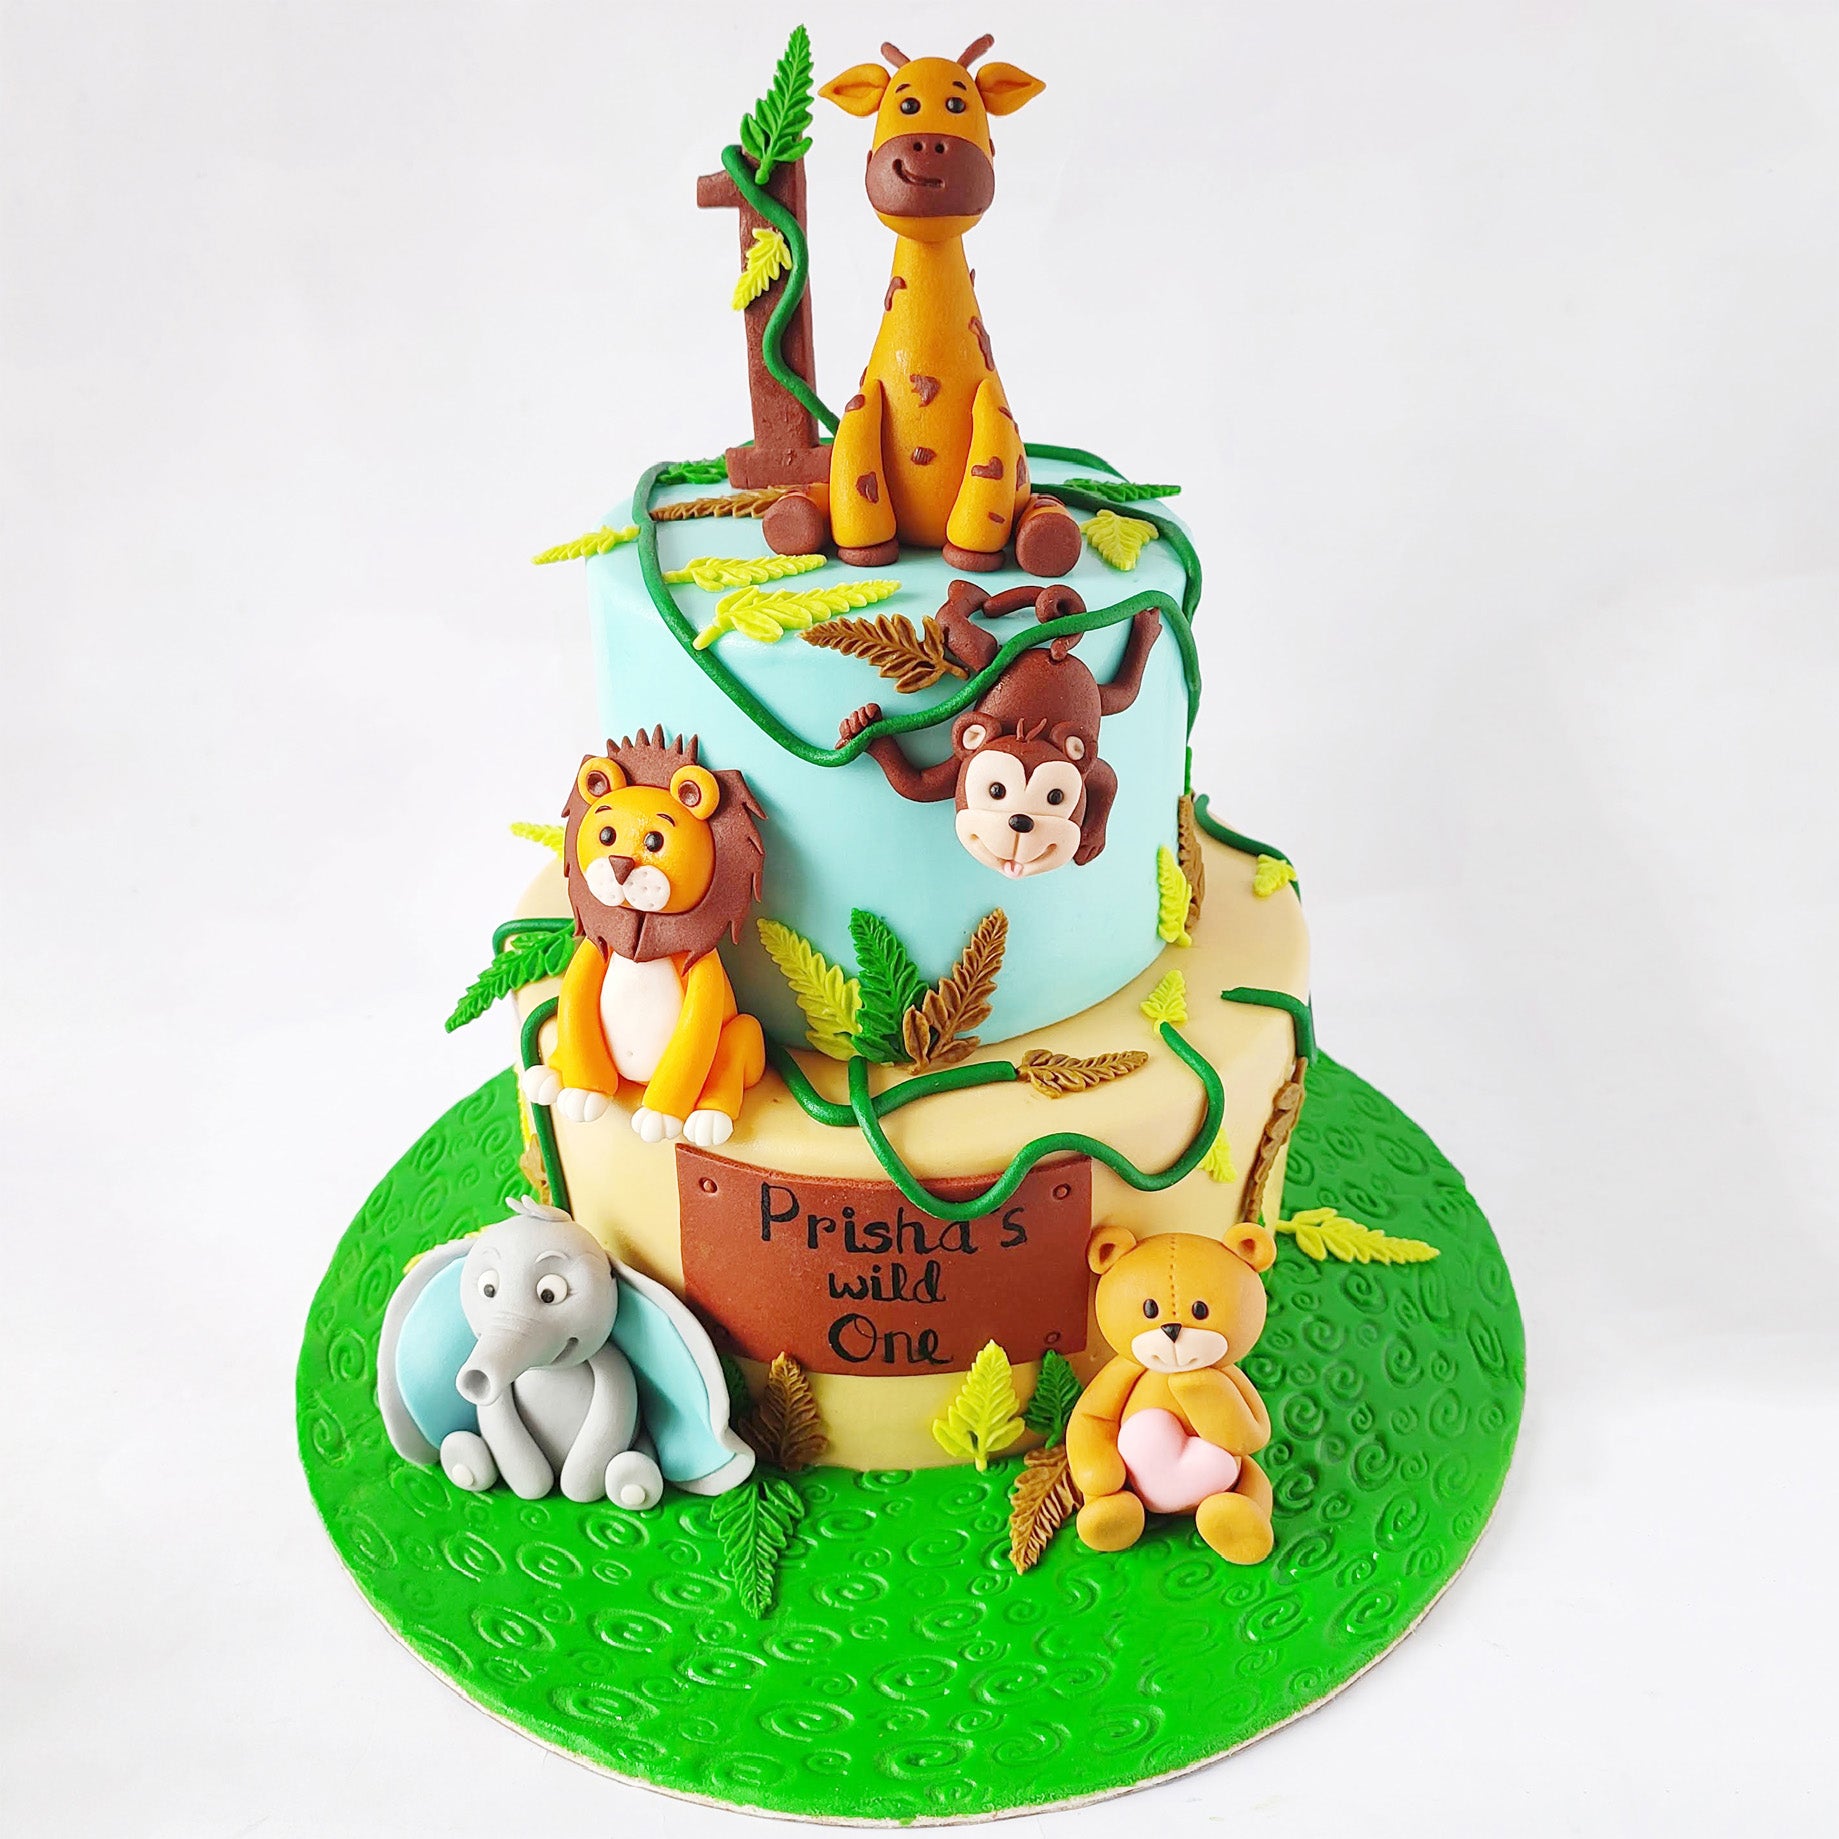 Woodland Animals Christening Cake - Mel's Amazing Cakes